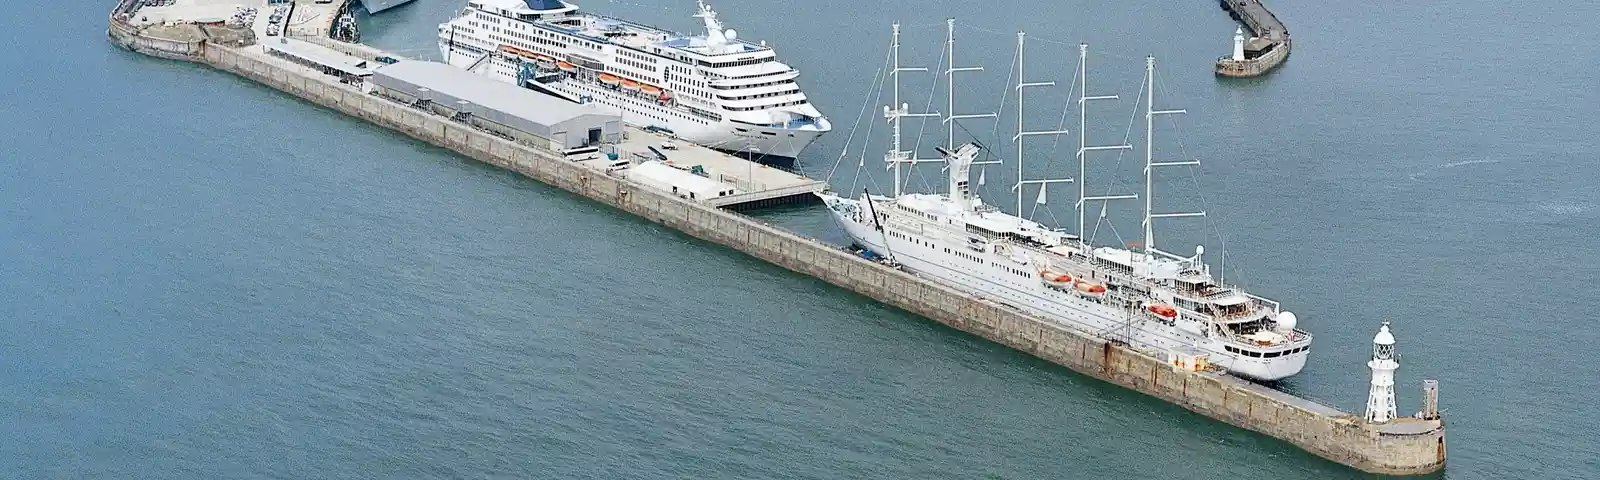 Dover Cruise Port.JPG